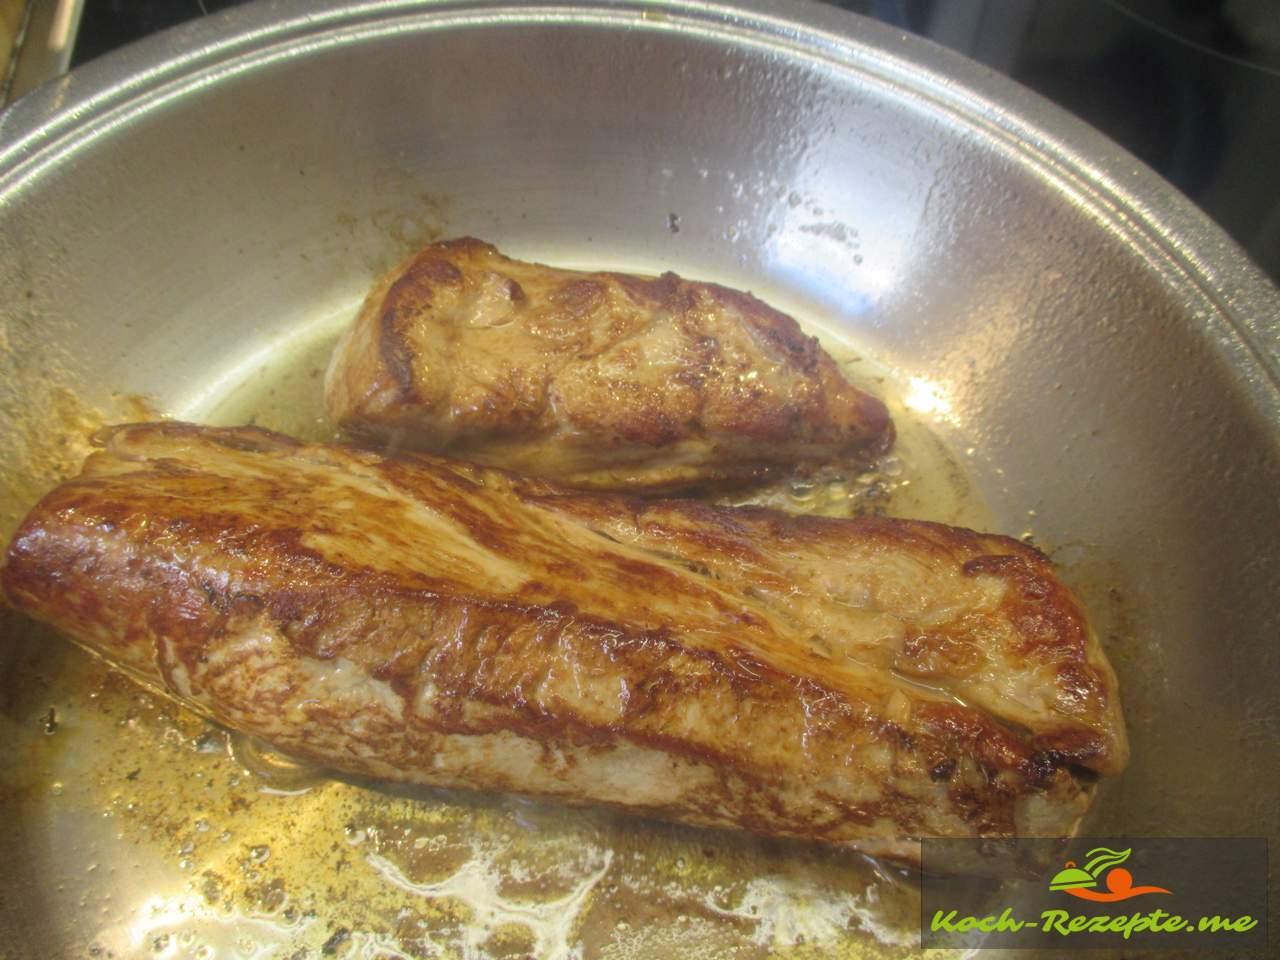 Schweinefilet braten im Ofen richtig saftig garen. Kerntemperatur 58°C-65°C